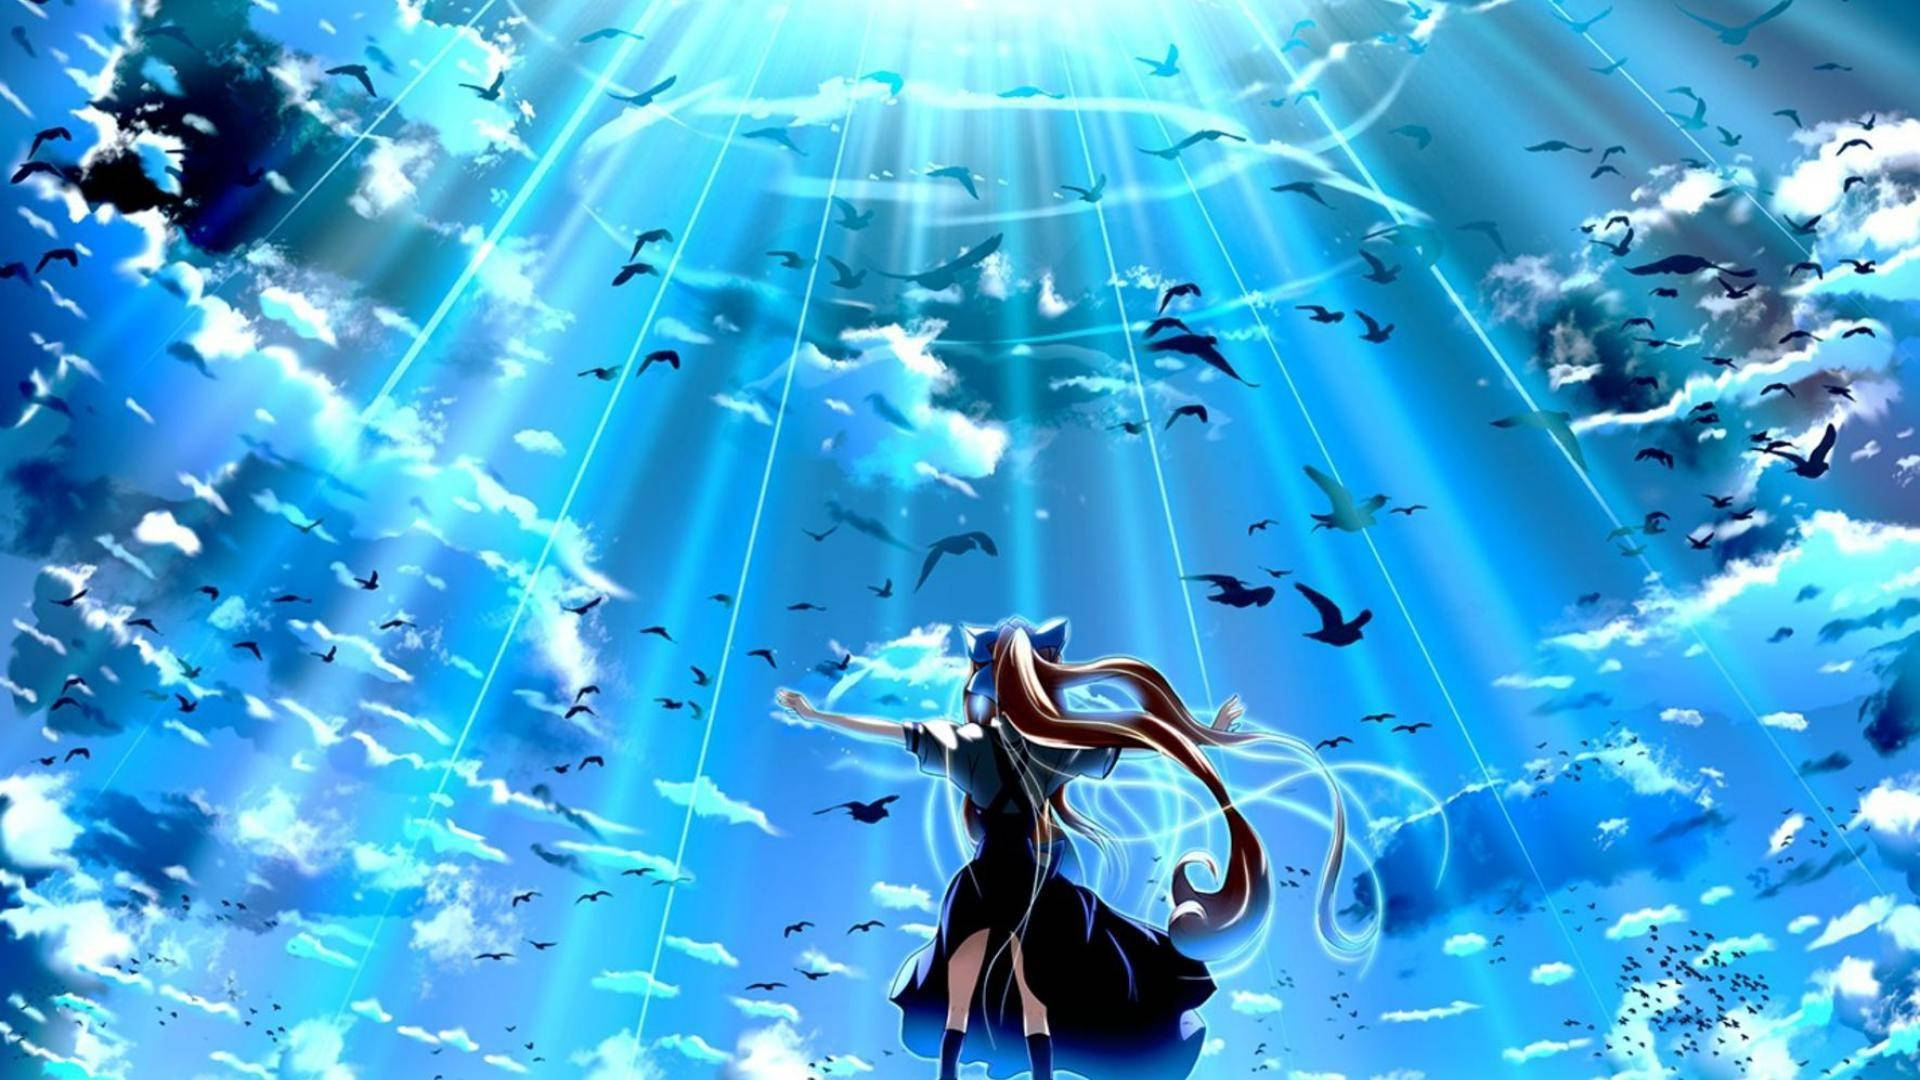 Anime Blue Girl Birds In Sky Wallpaper